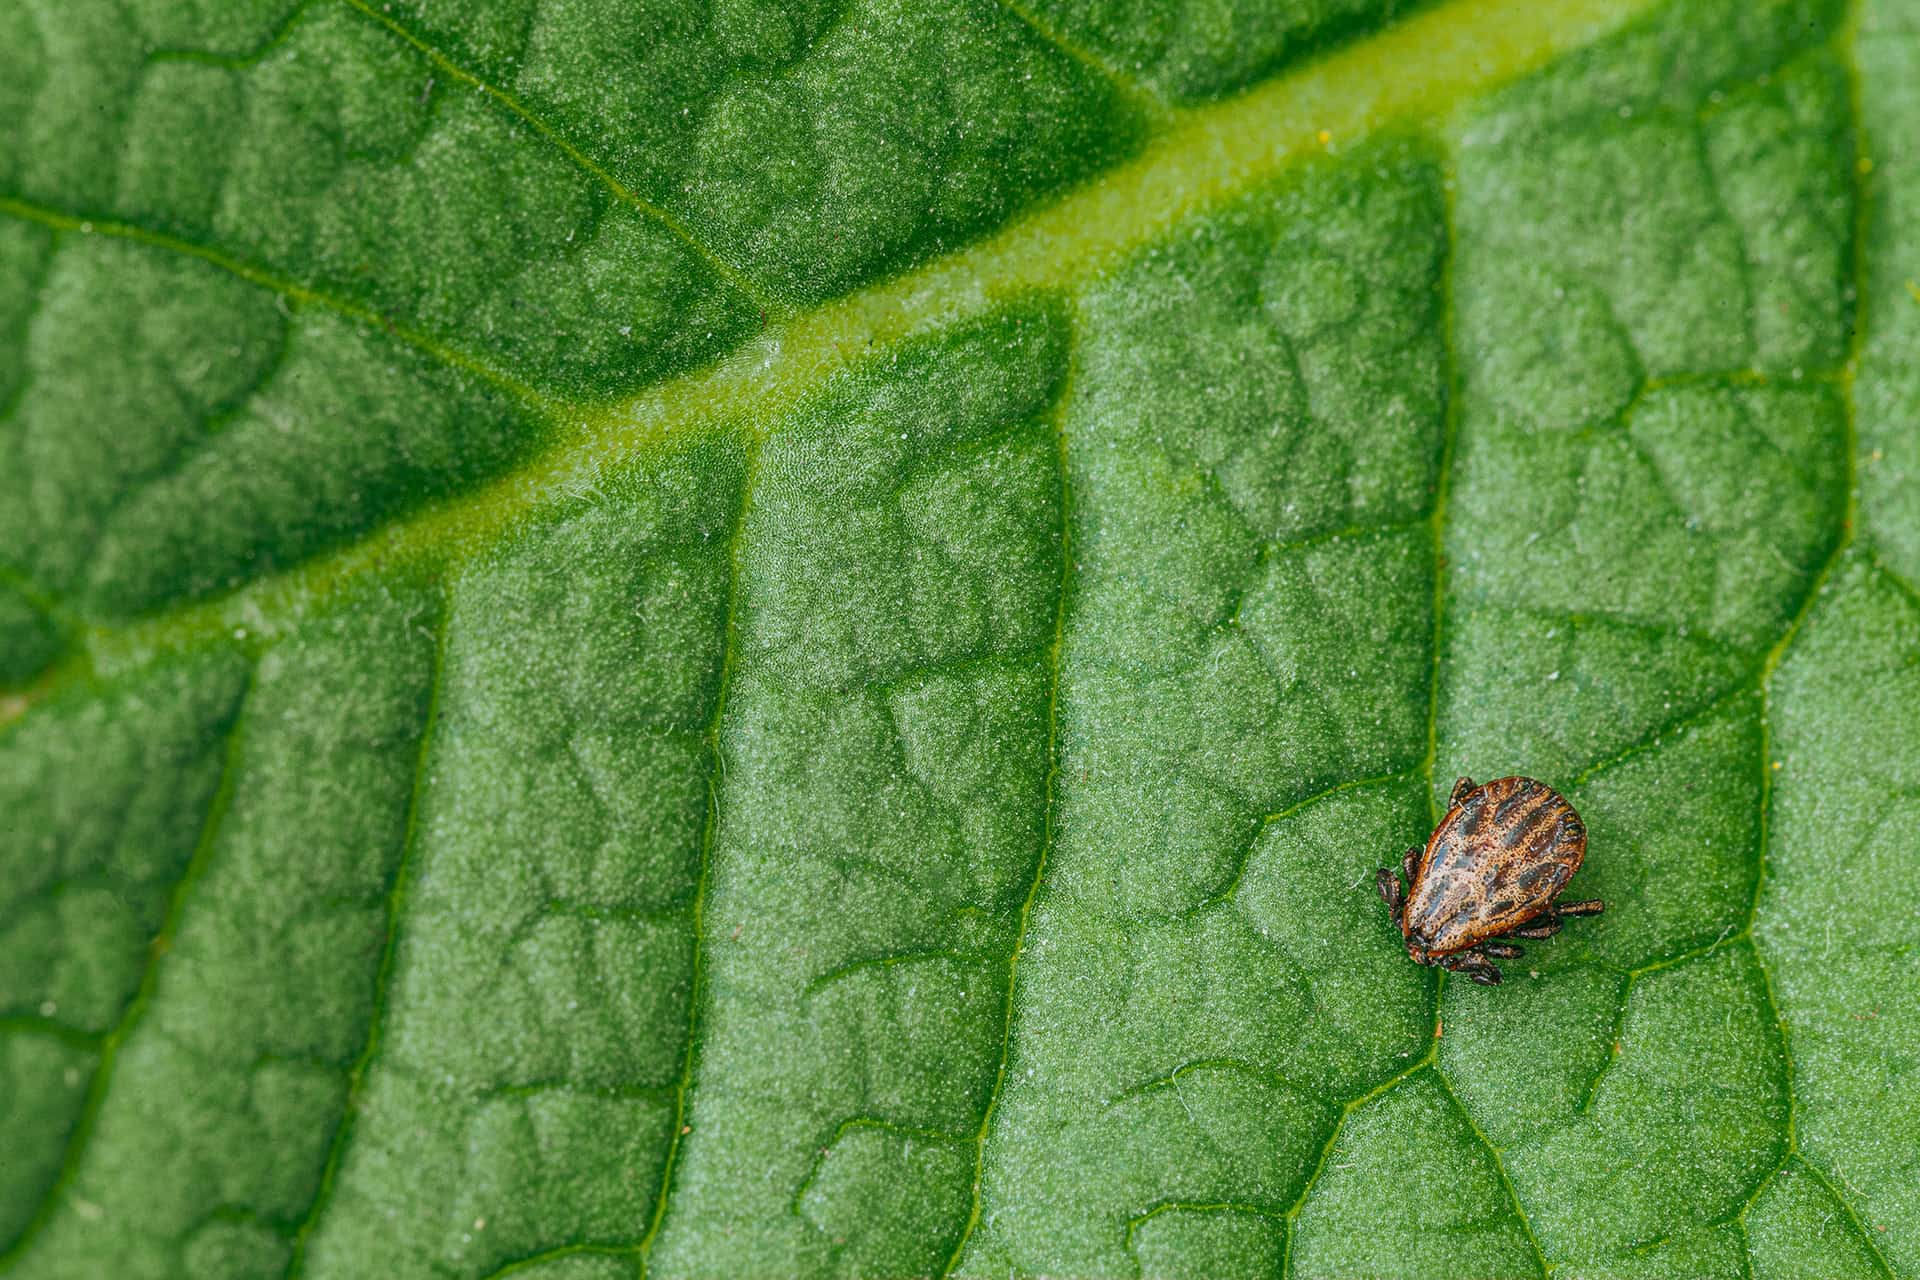 Tick on a Leaf